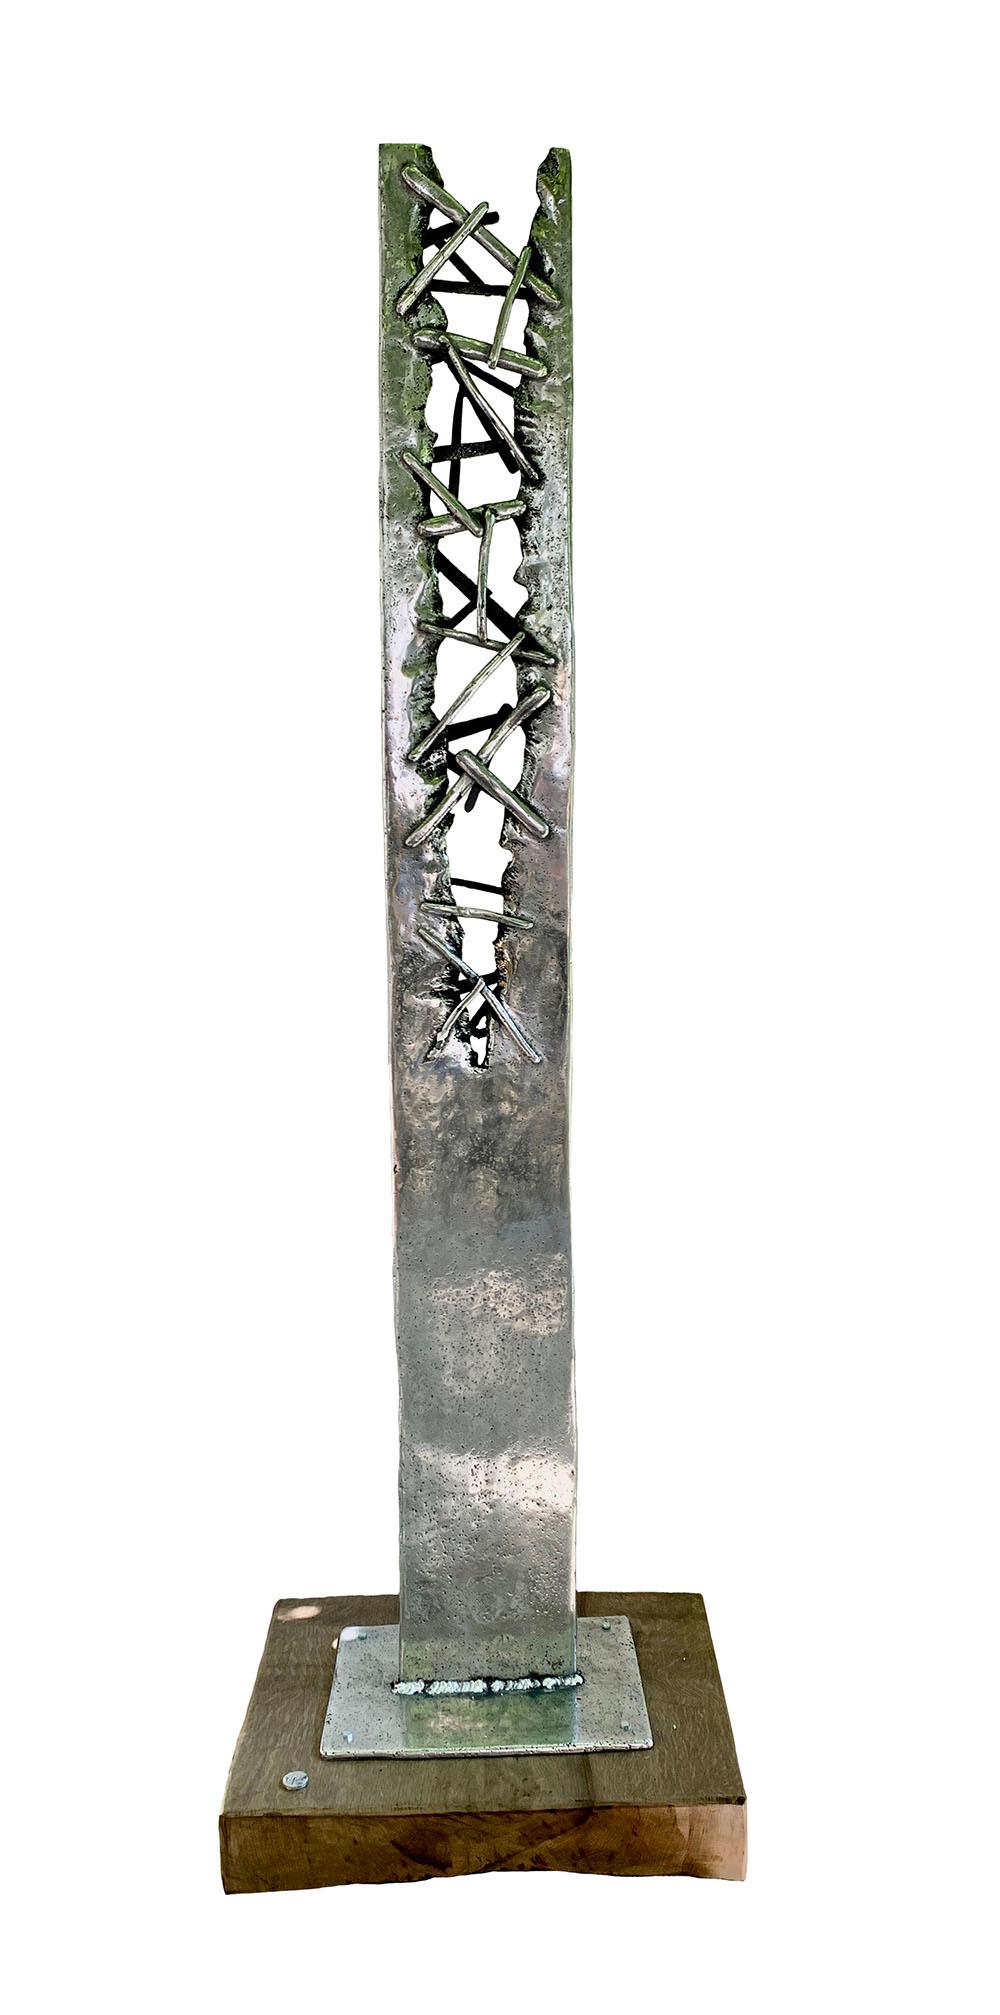  Sculpture de jardin d'extérieur Totem abstraite et moderne « Croxet » Aluminium Bois Argent